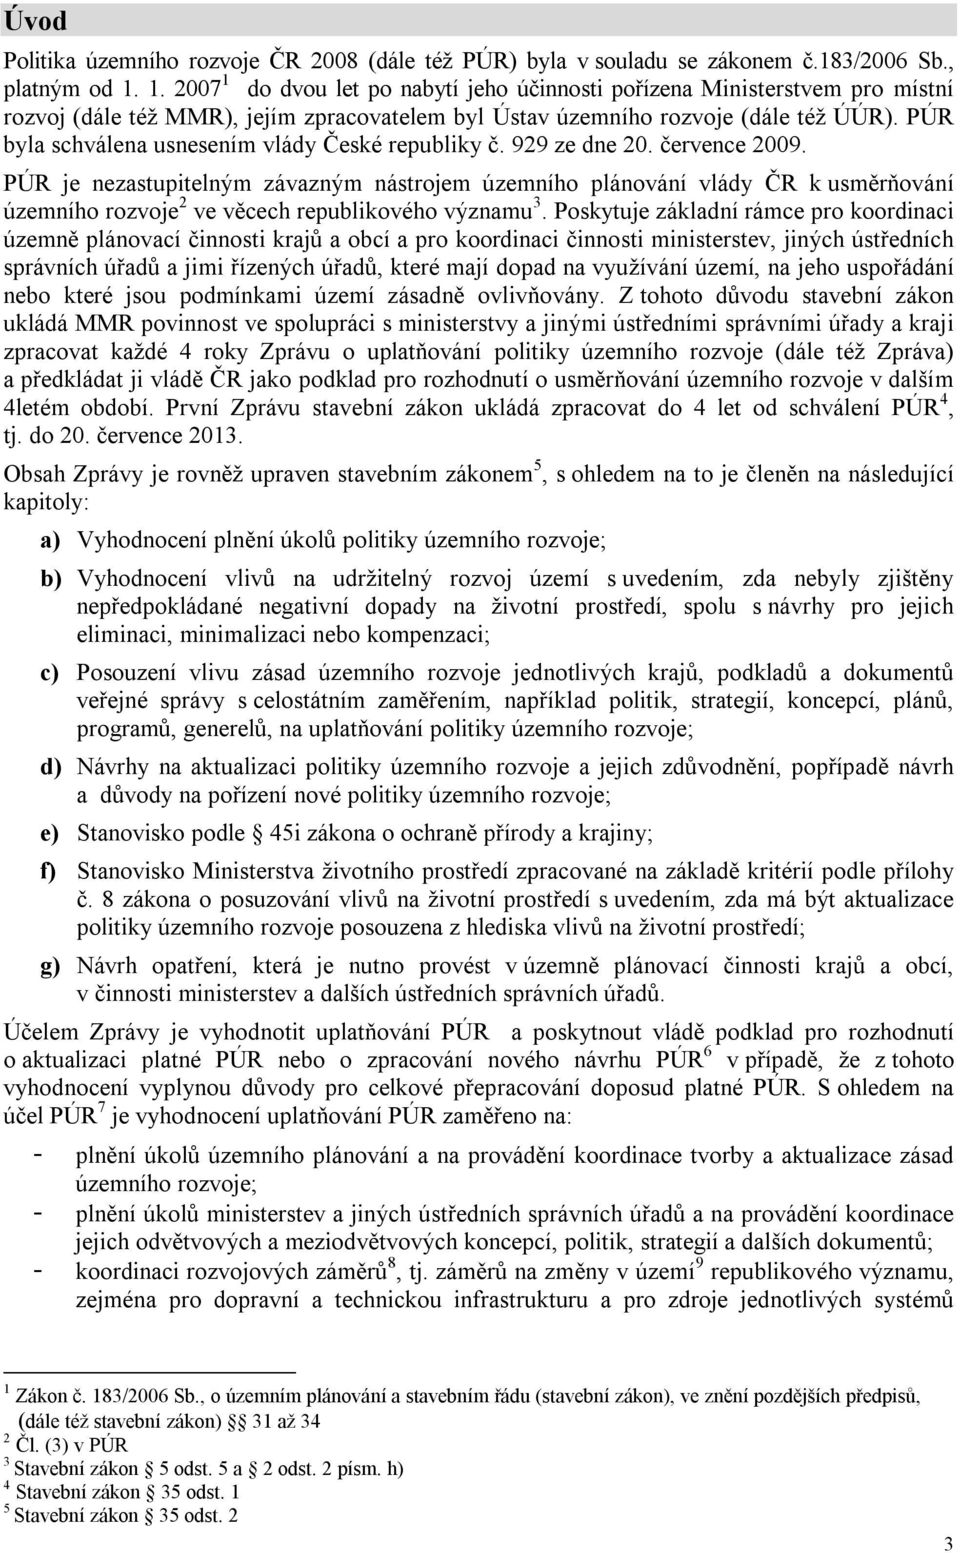 PÚR byla schválena usnesením vlády České republiky č. 929 ze dne 20. července 2009.